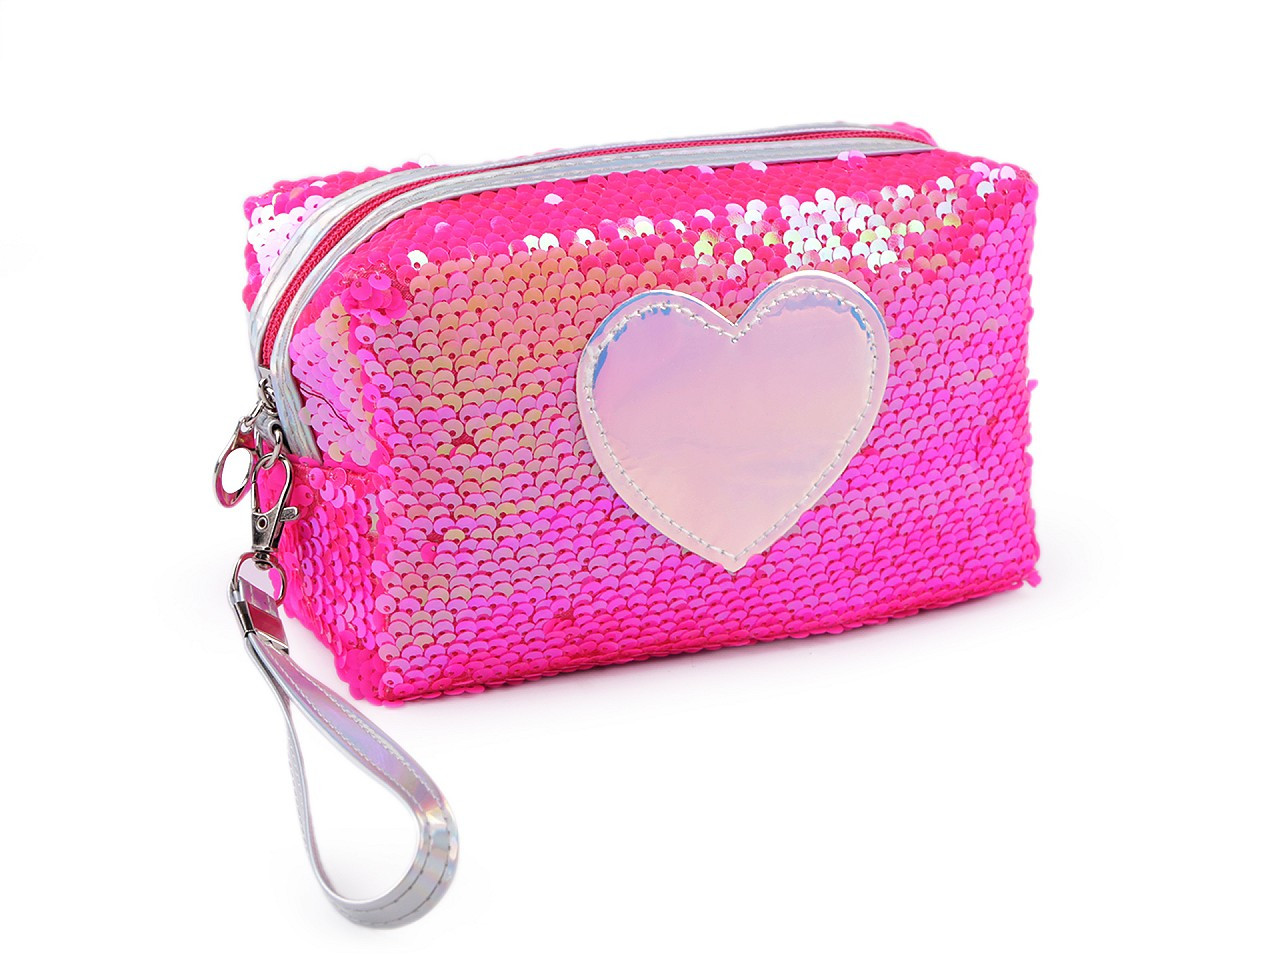 Pouzdro / kosmetická taška s oboustrannými flitry a srdcem 11x18 cm, barva 2 pink